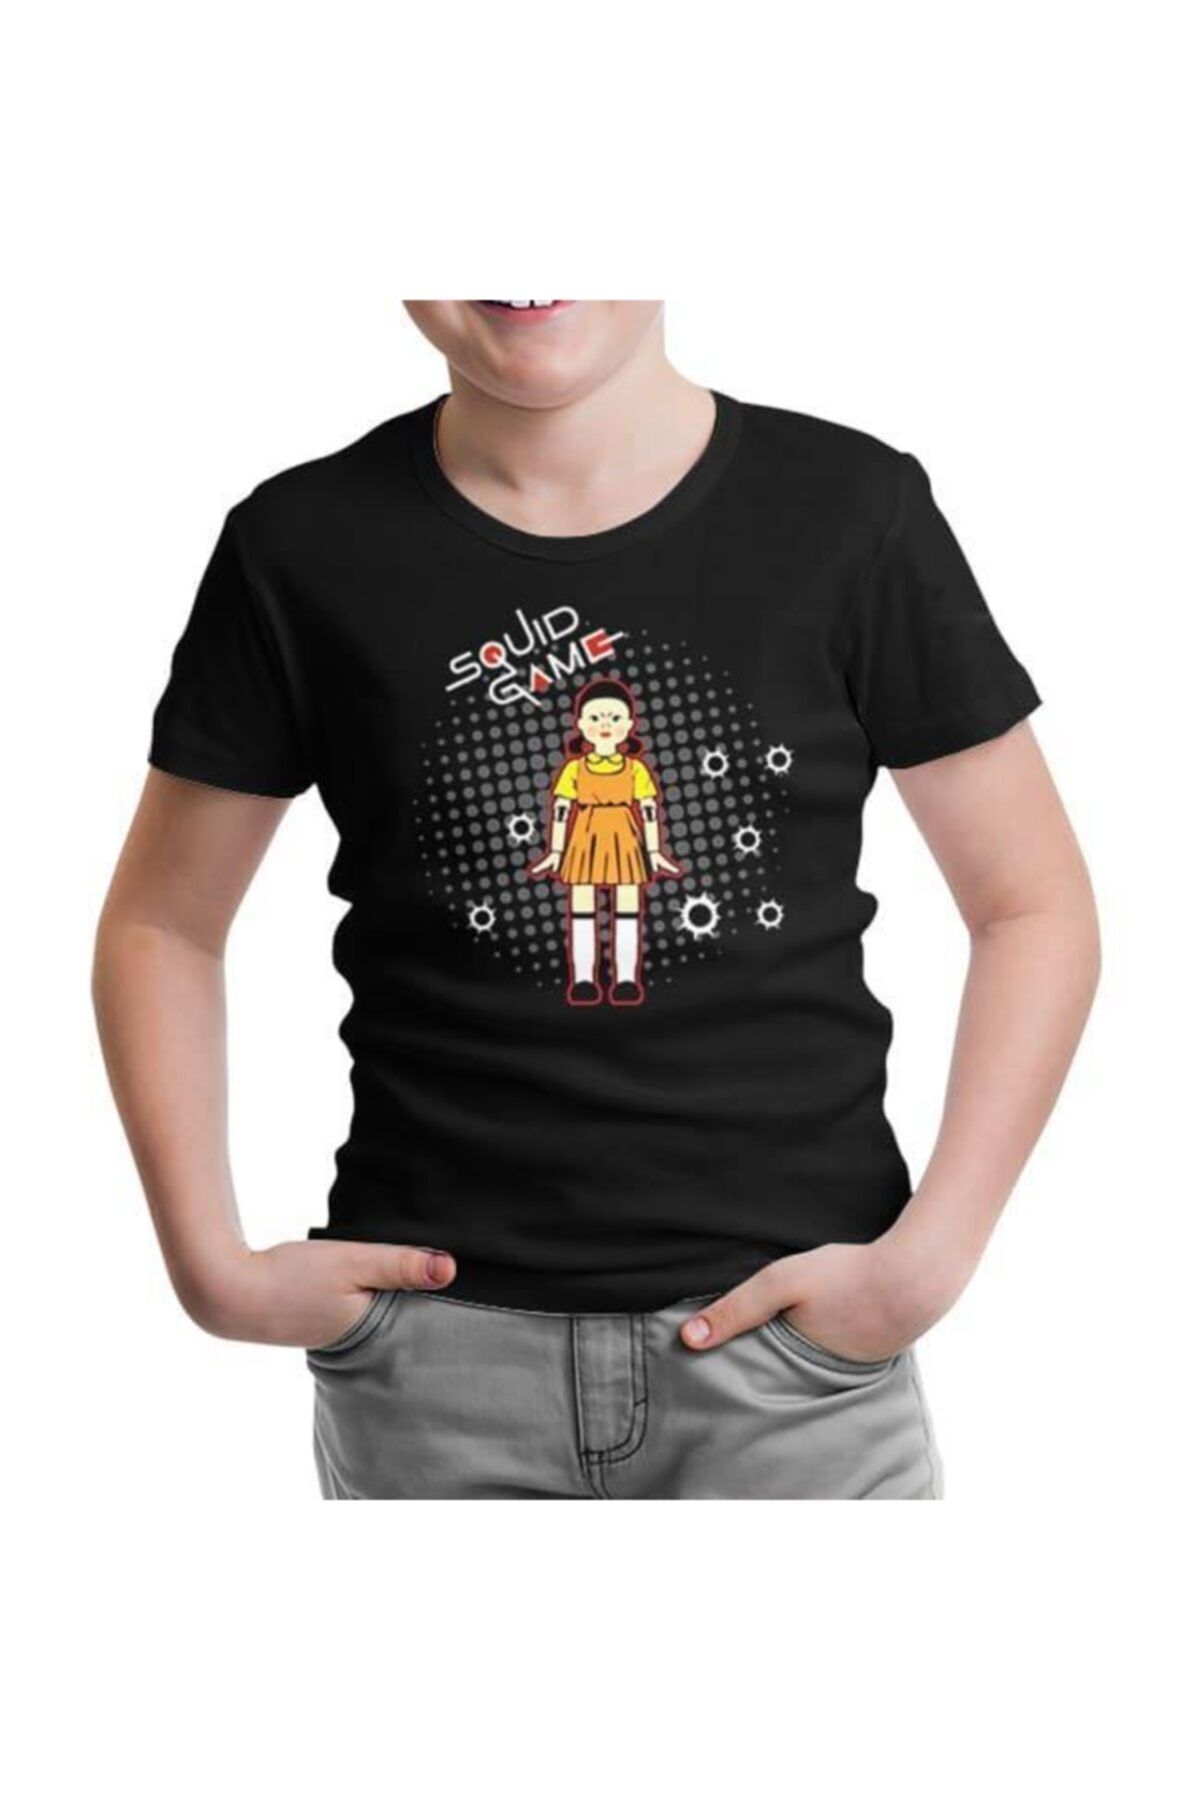 Lord T-Shirt Squid Game - Robot Bebek Mermi Siyah Çocuk Tshirt